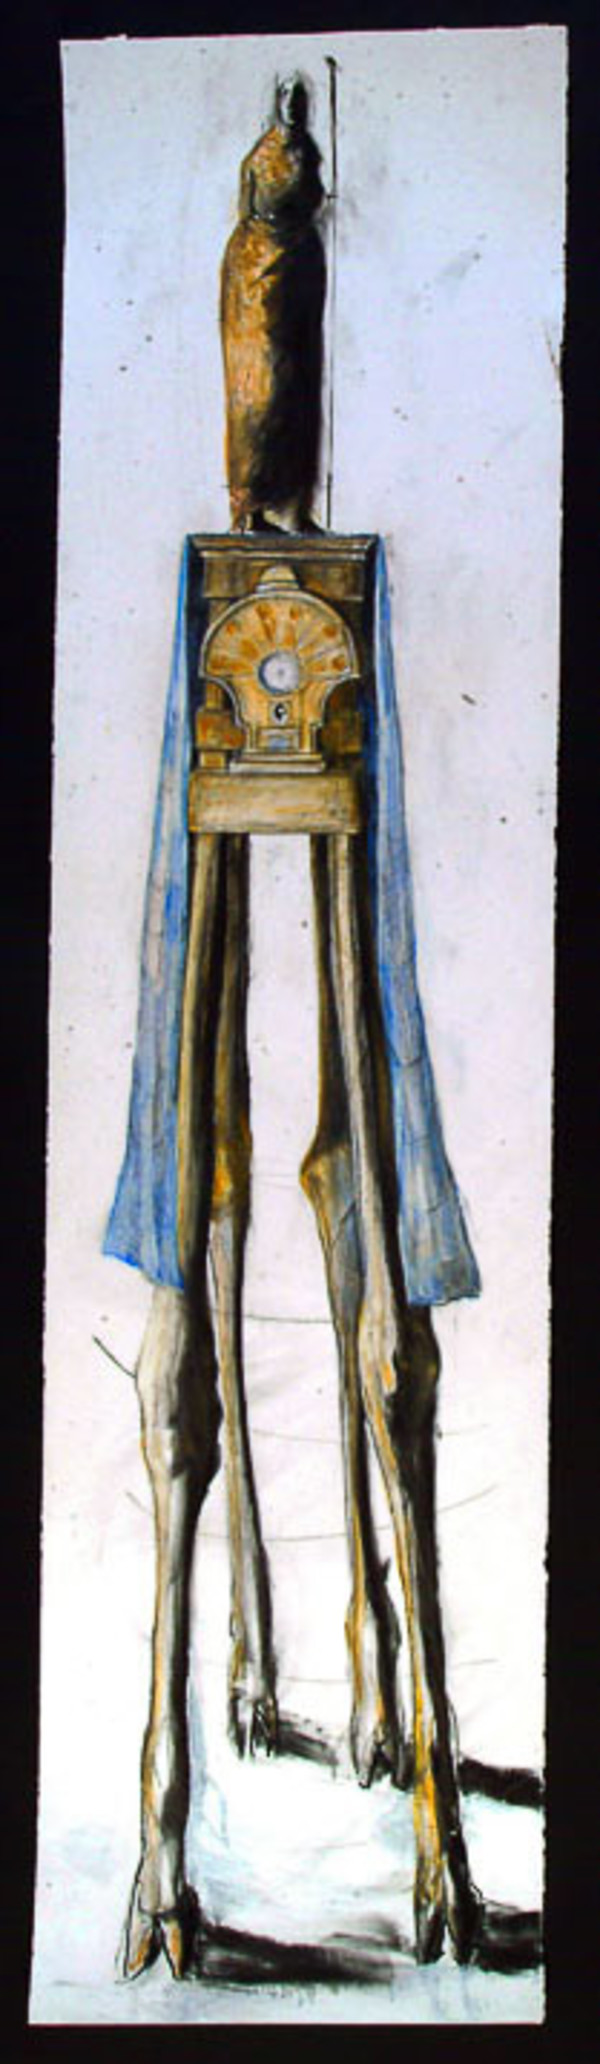 Goat Leg Pedestal - Clock by Eve Whitaker